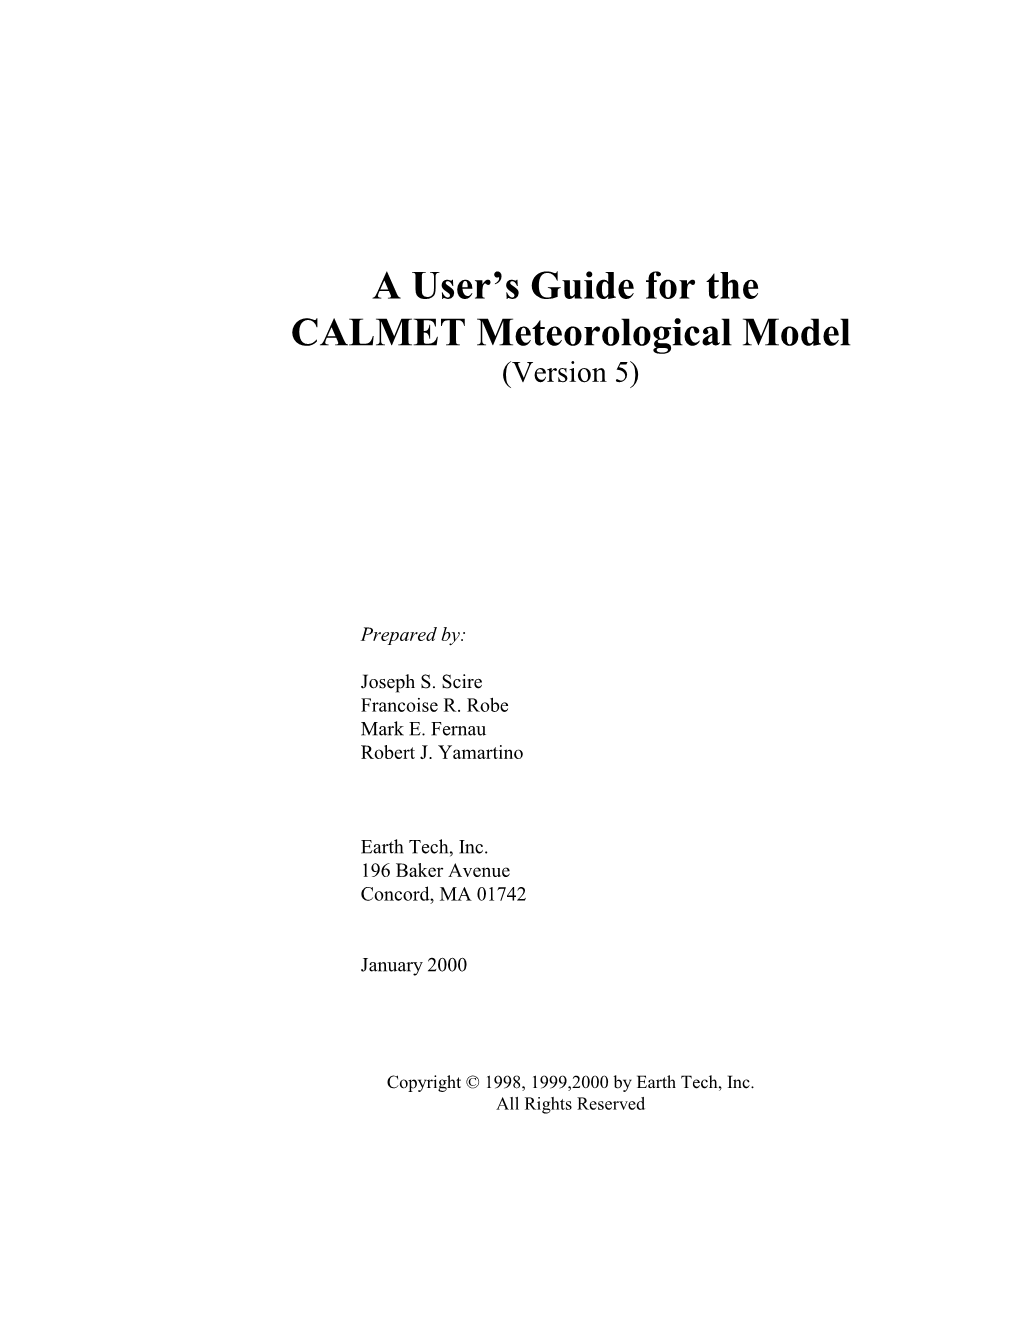 A User's Guide for the CALMET Meteorological Model